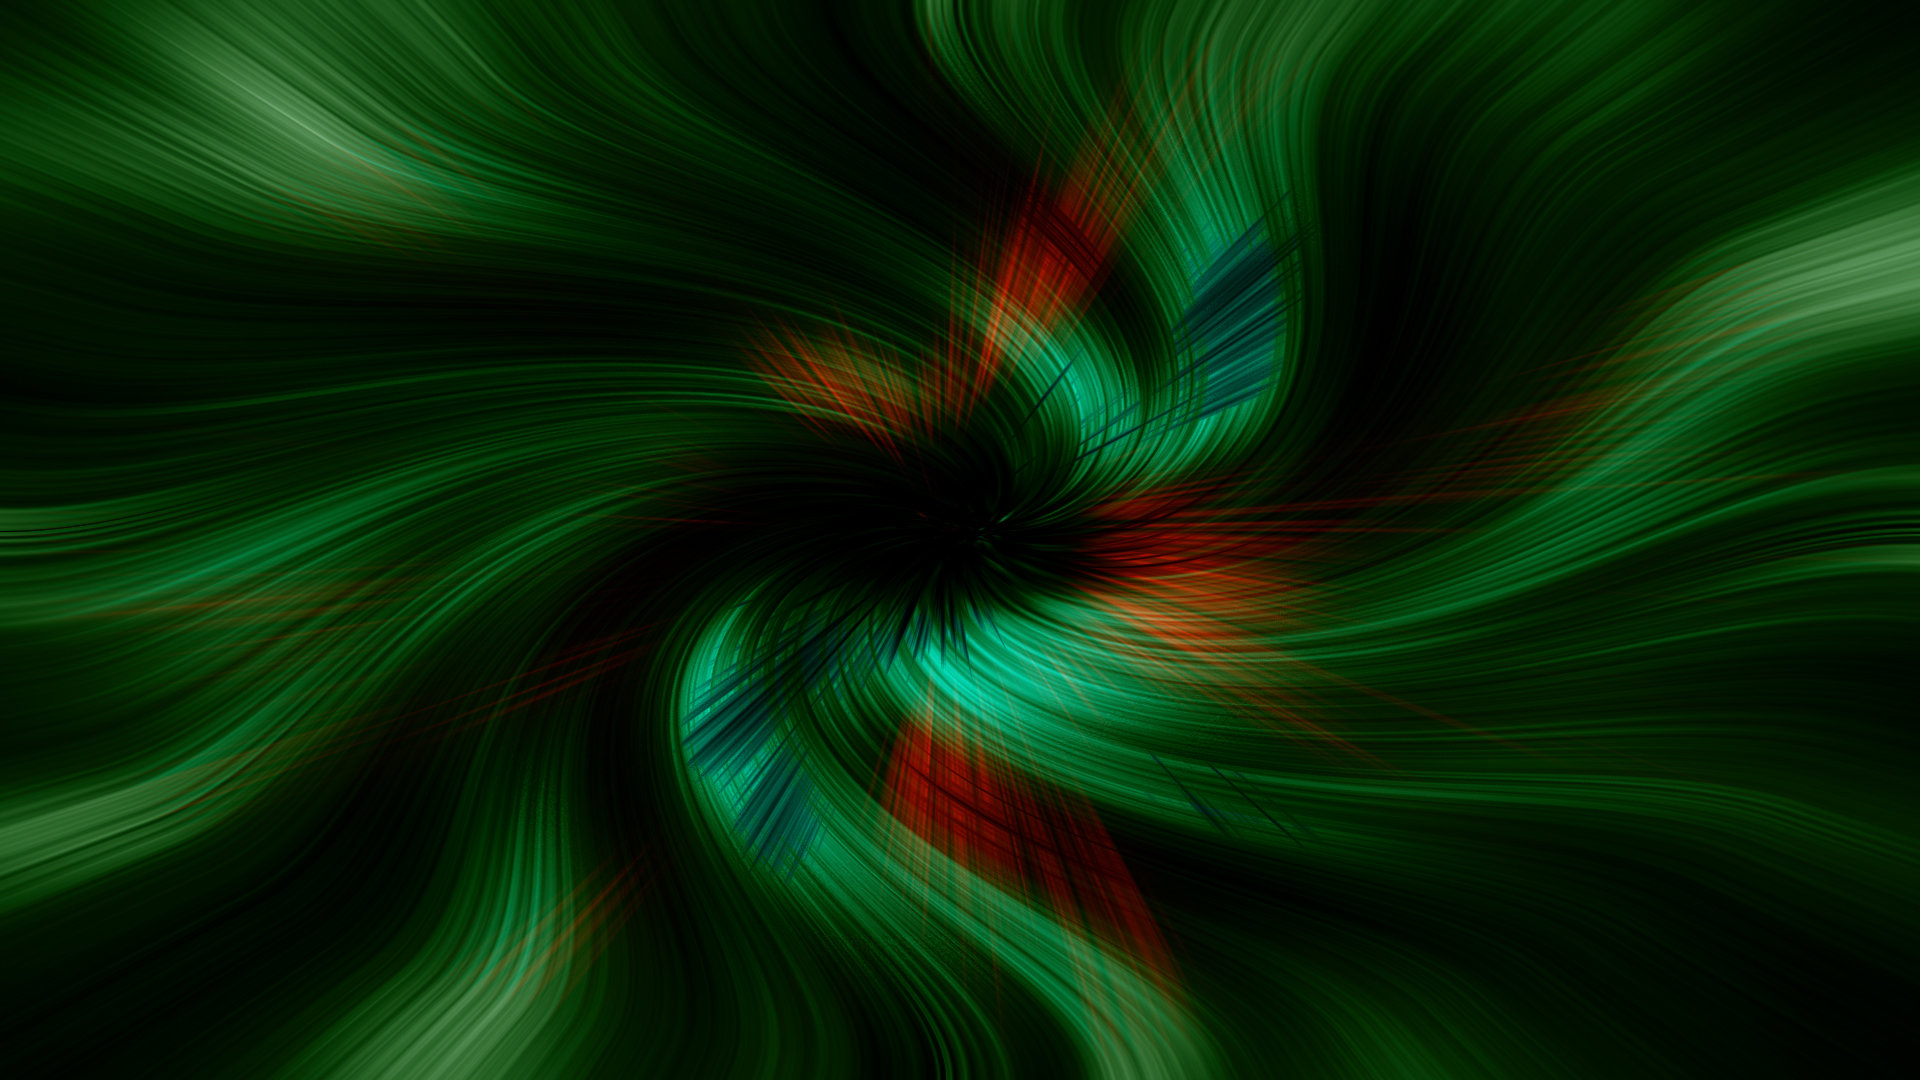 Swirl wallpaper HD for desktop background